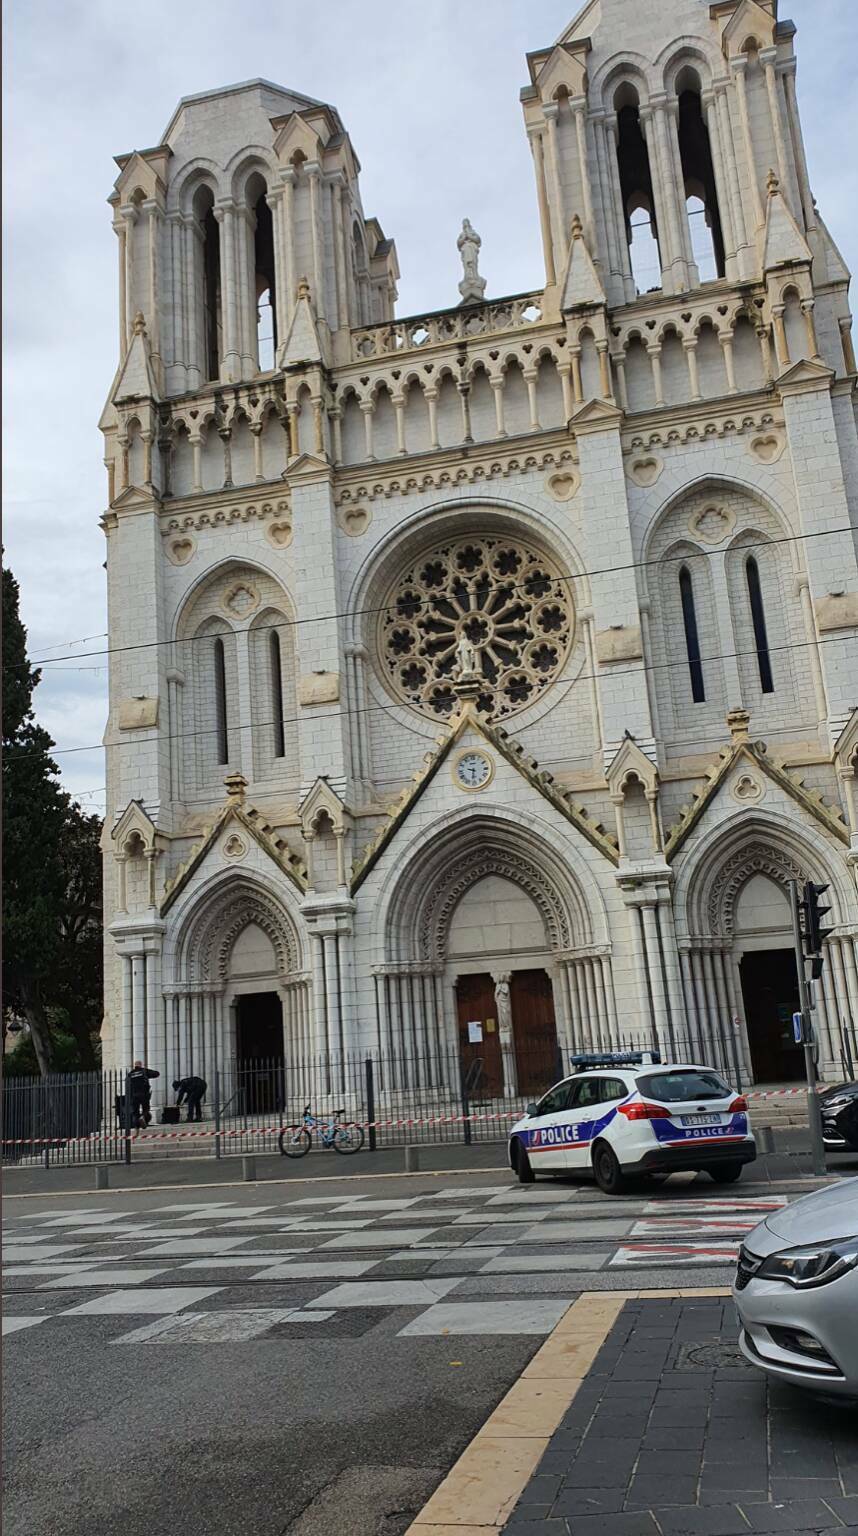 Attentato terroristico a Nizza: tre morti e numerosi feriti nella basilica di Notre-Dame